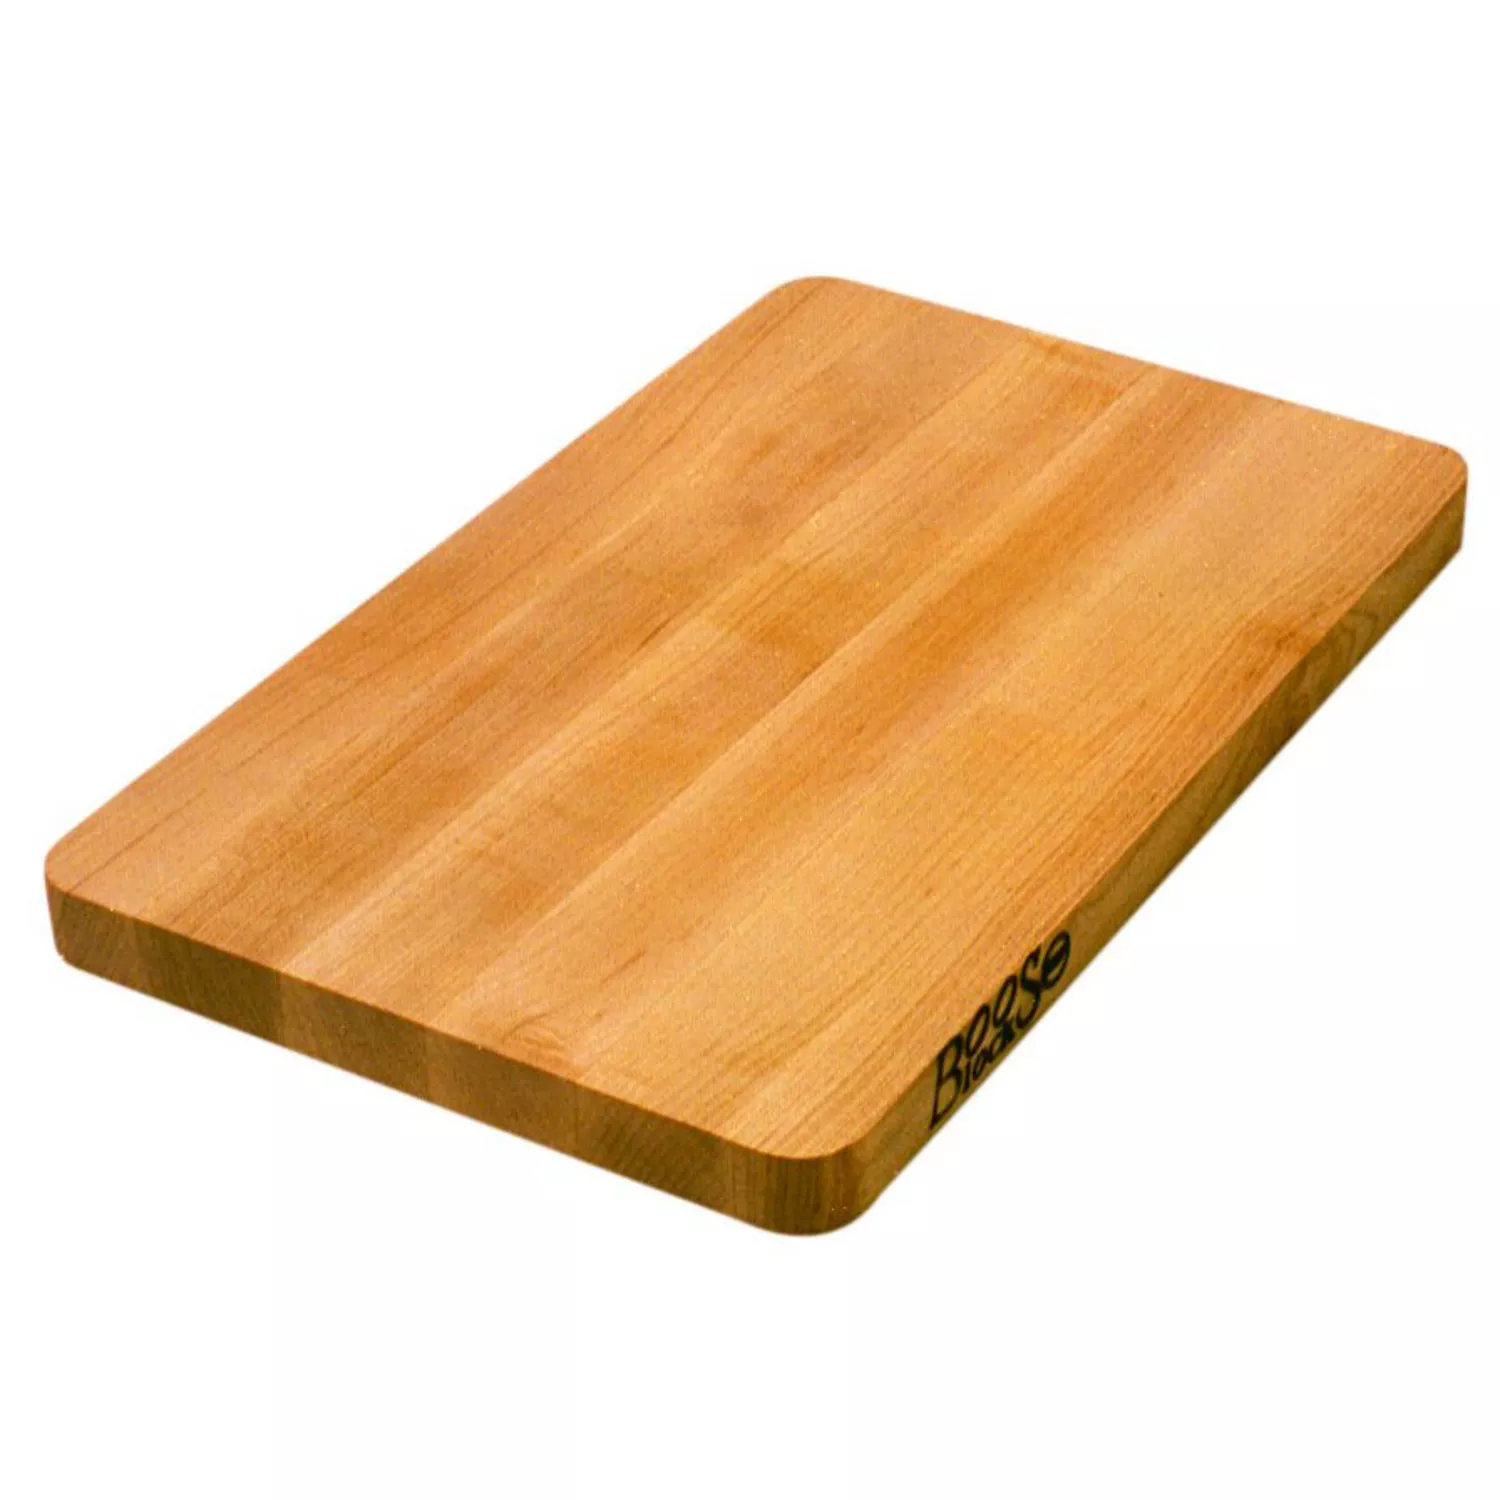 John Boos & Co. Maple Edge-Grain Chop-N-Slice Cutting Board, 16 x 10 x 1